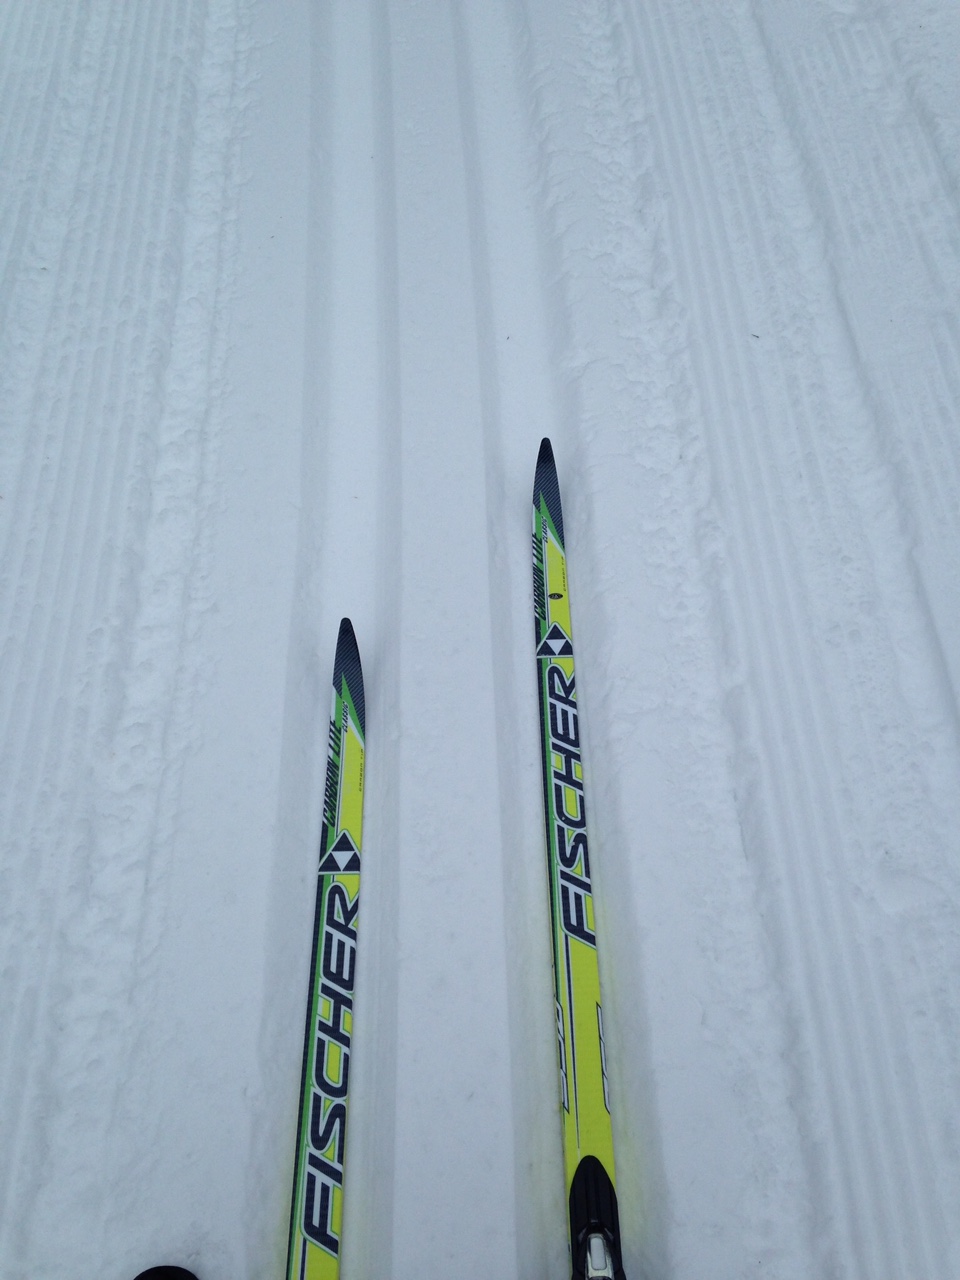 Deux skis sur une piste damée.